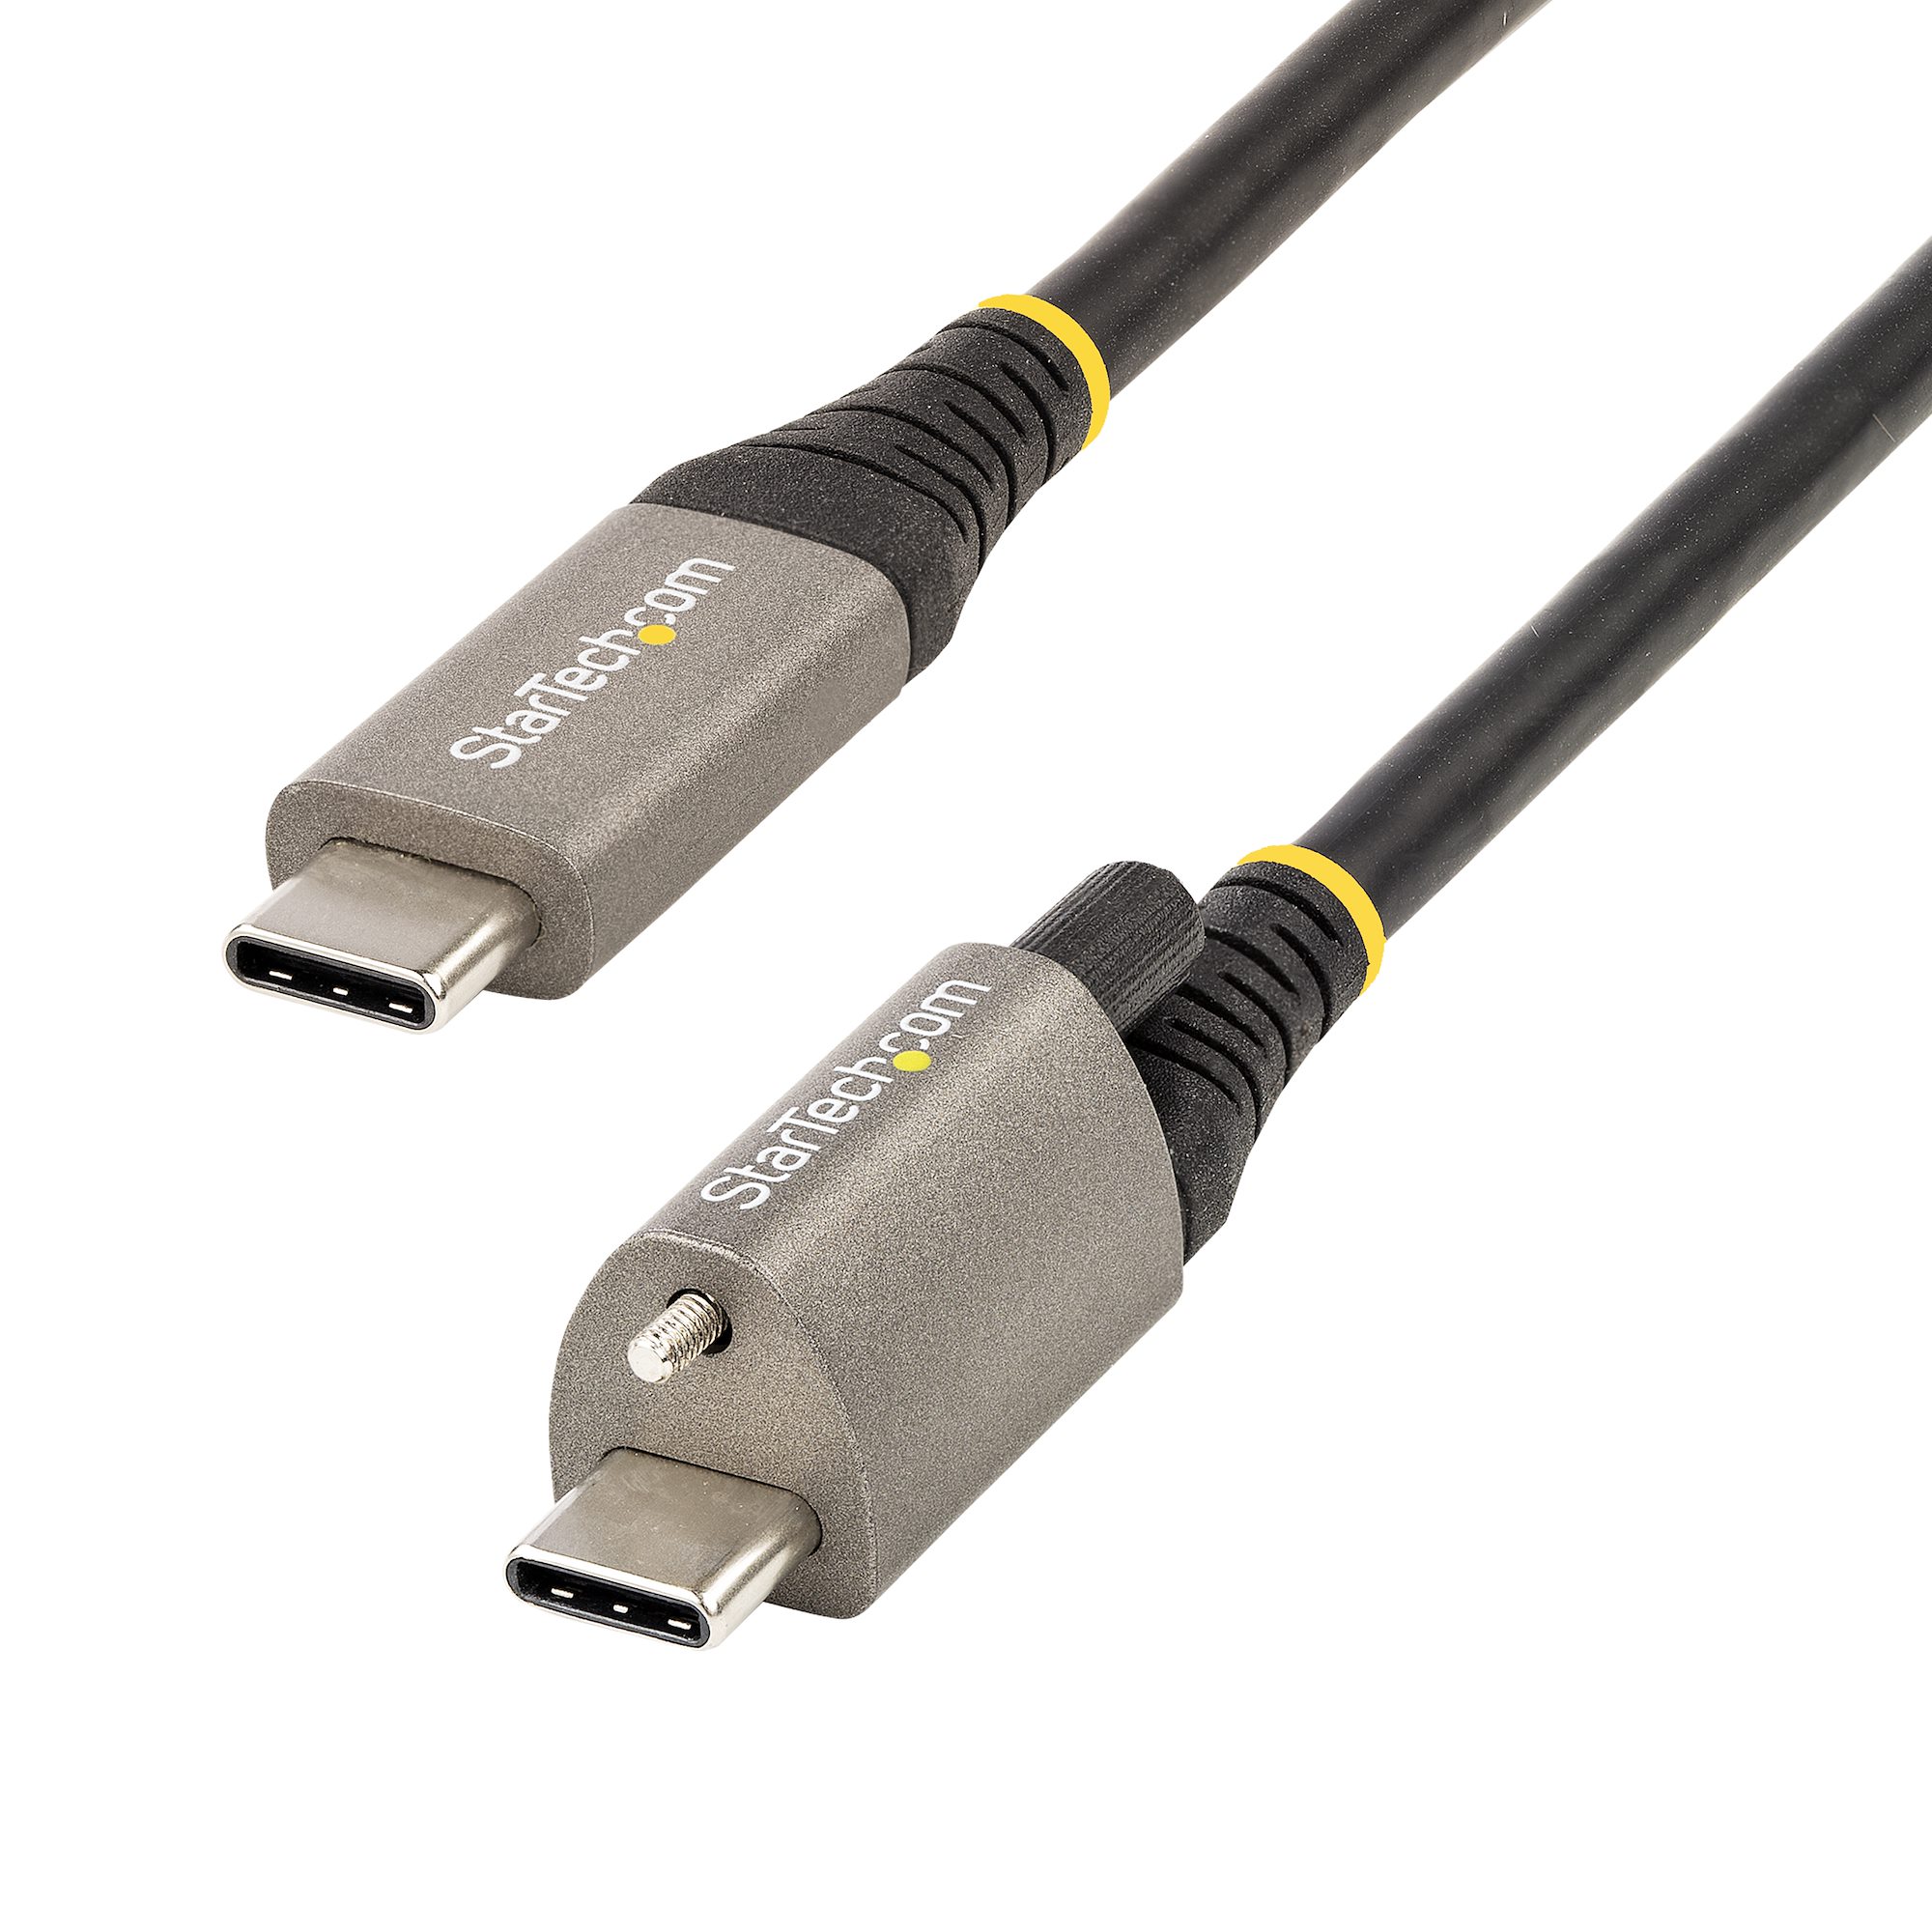 Har råd til Som regel Frontier 3ft Top Screw Locking USB C Cable 10Gbps - USB-C Cables | StarTech.com